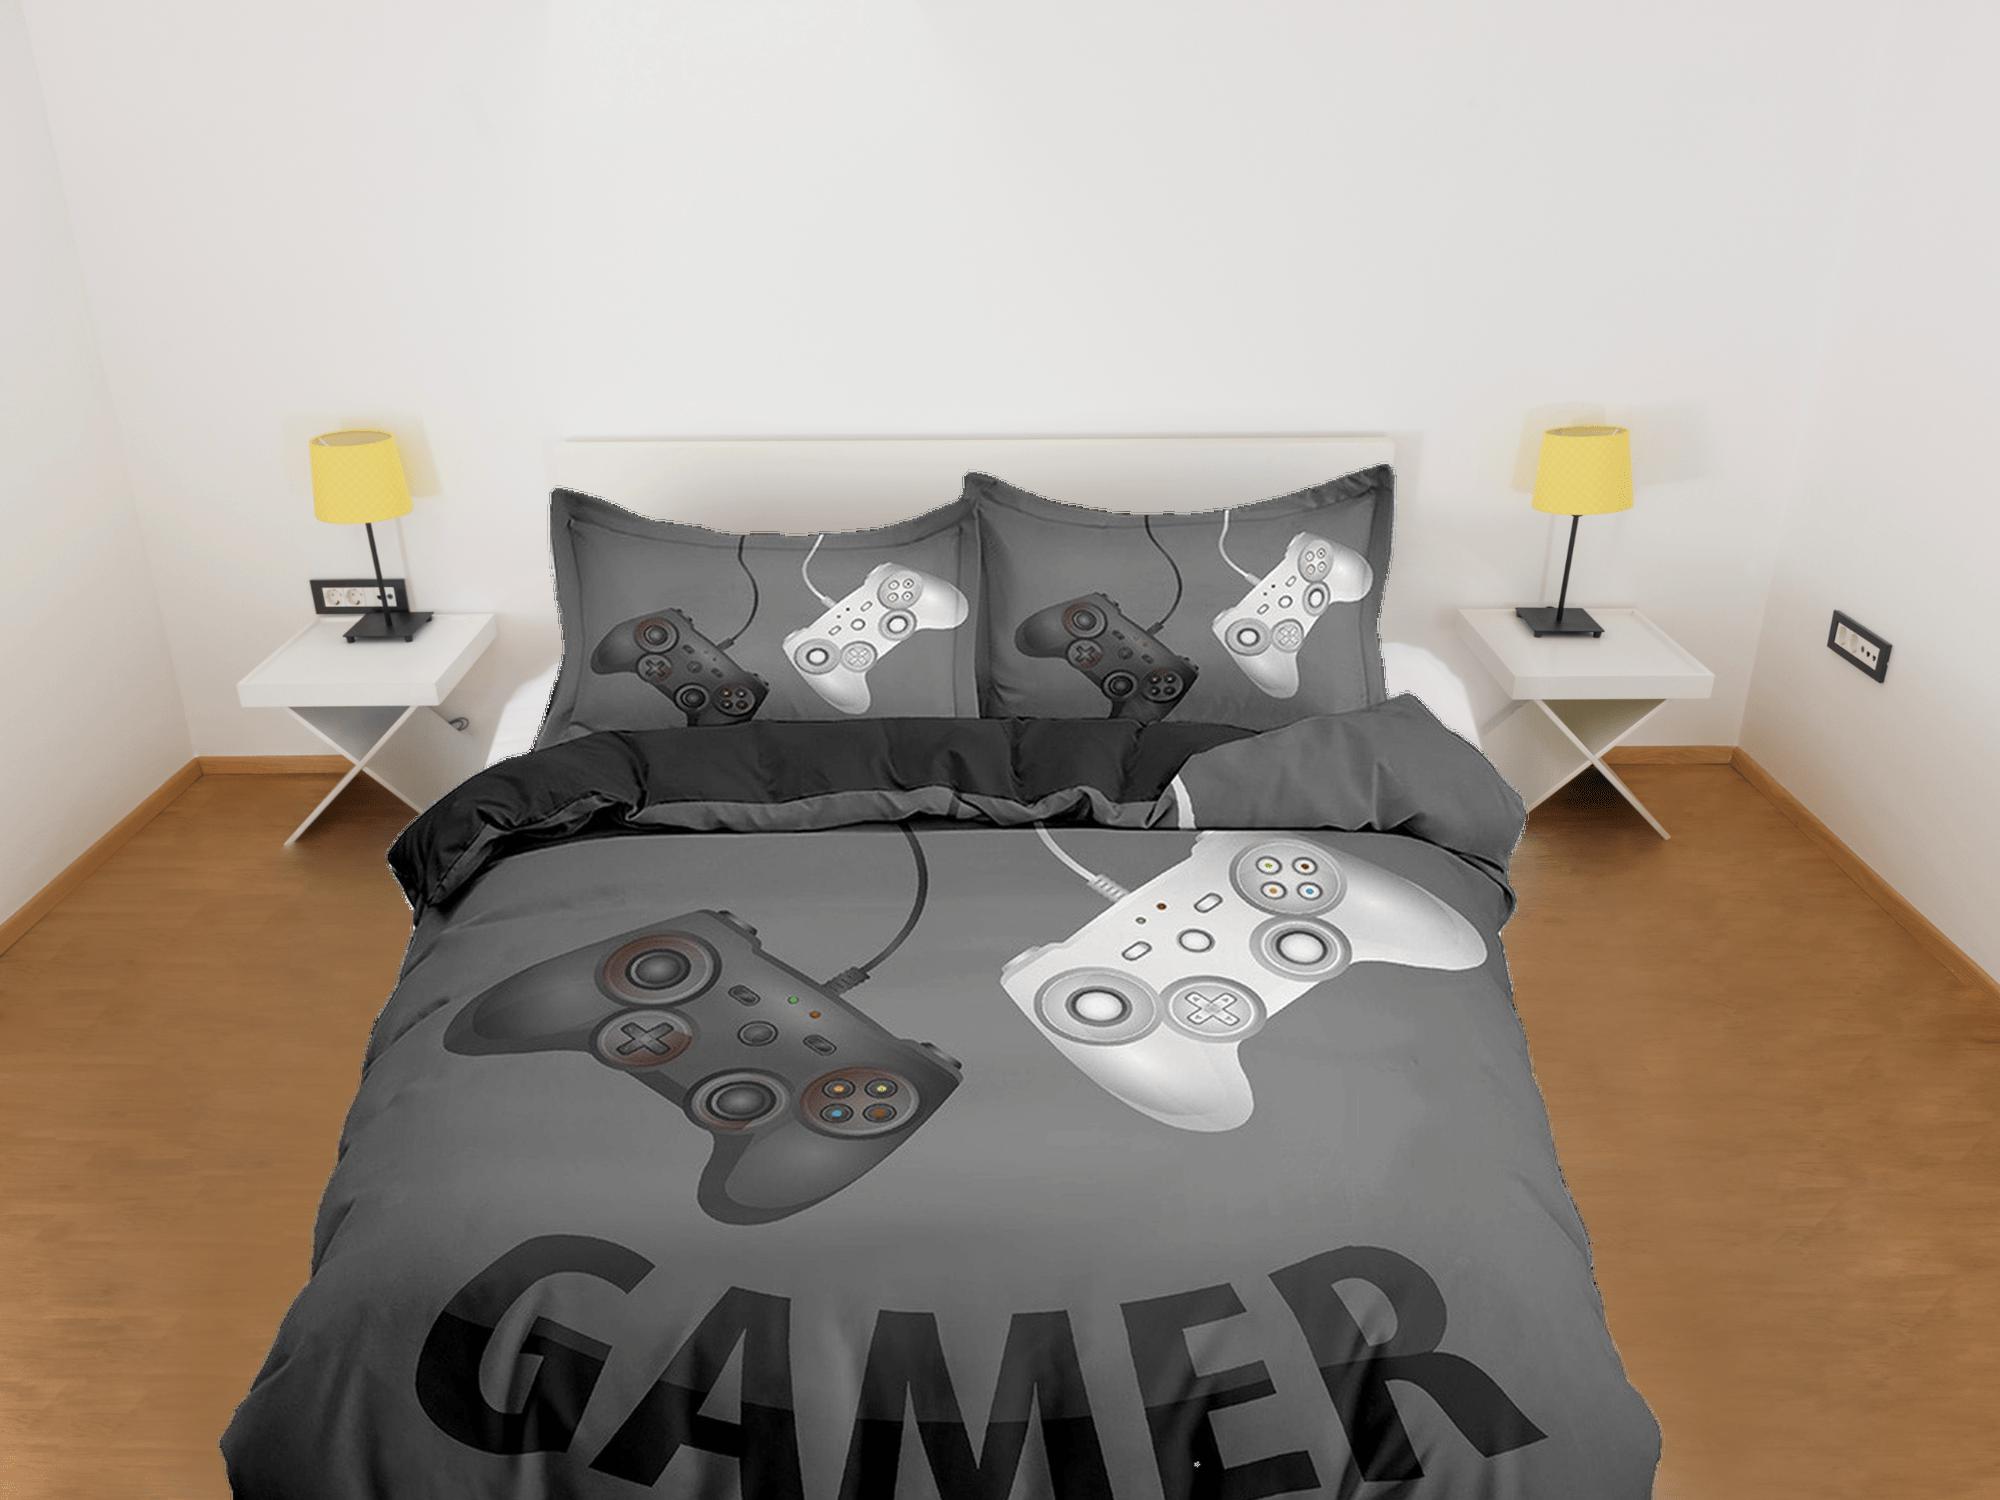 daintyduvet Gamer bedding dark grey duvet cover, video gamer boyfriend gift bedding set full king queen twin, boys bedroom, college dorm bedding